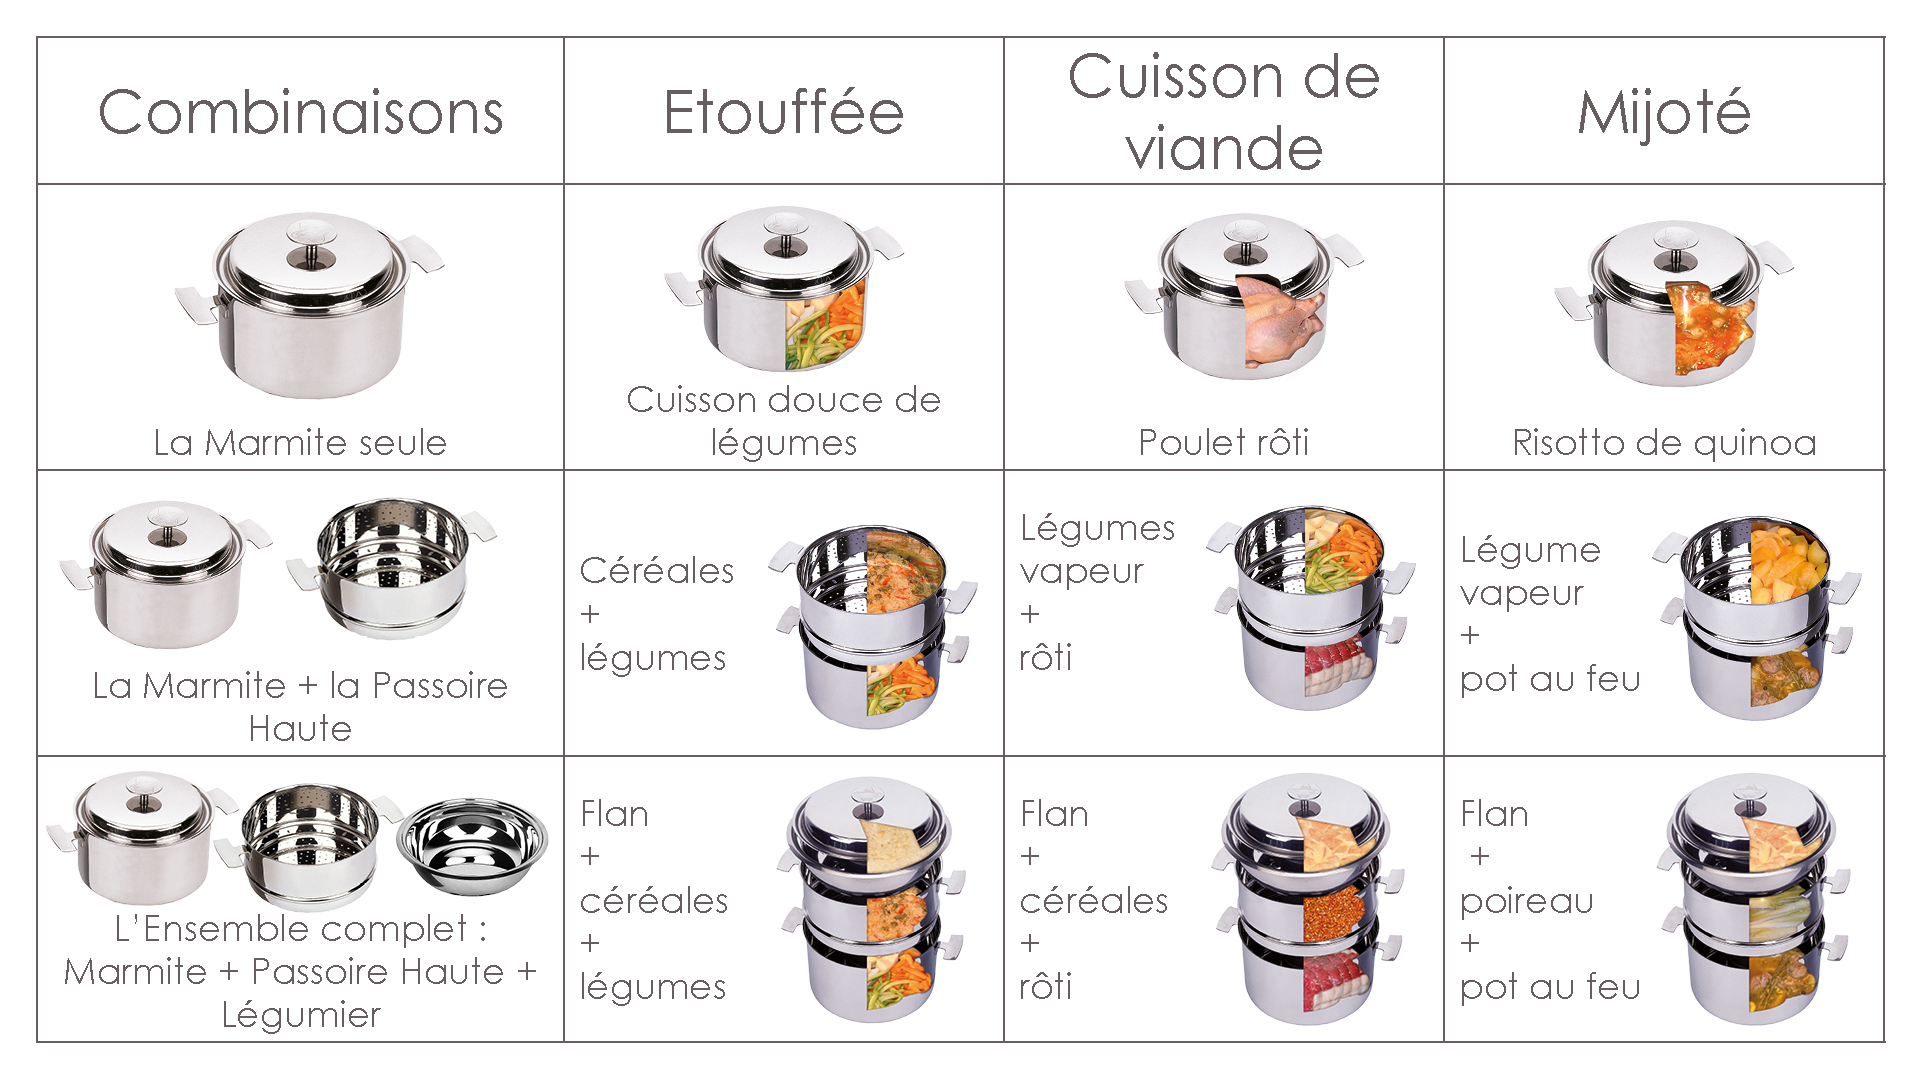 Tableau de présentations des différentes combinaisons de l'Ensemble Cuisson Douce Baumstal. En associant les différents éléments on peut ainsi varier les cuissons.